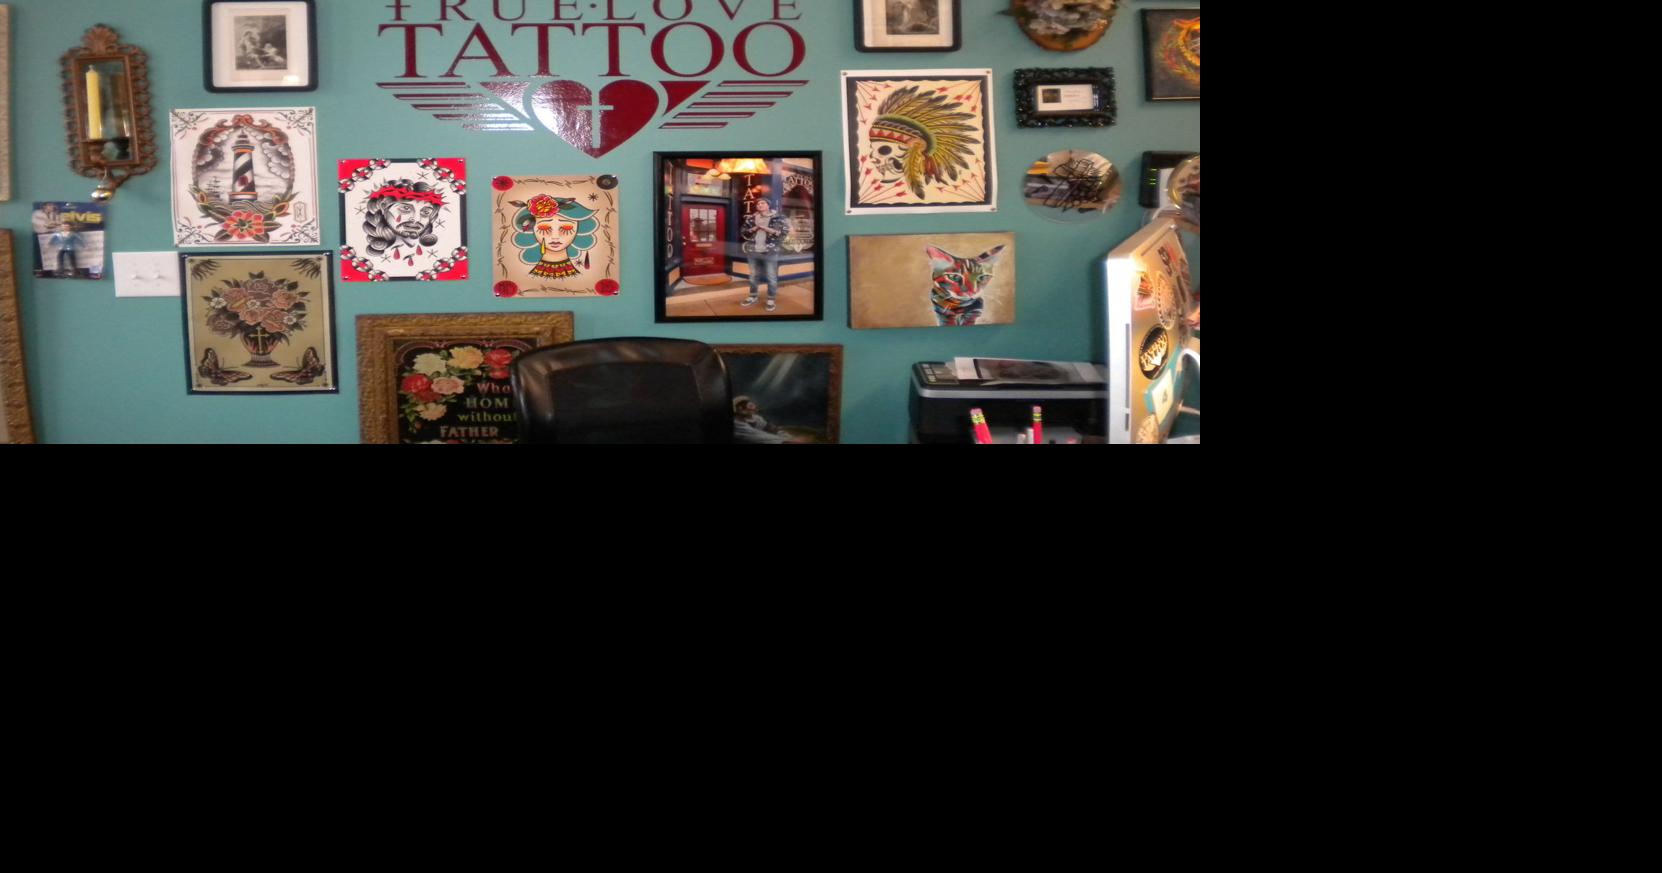 True Love tattoo studio